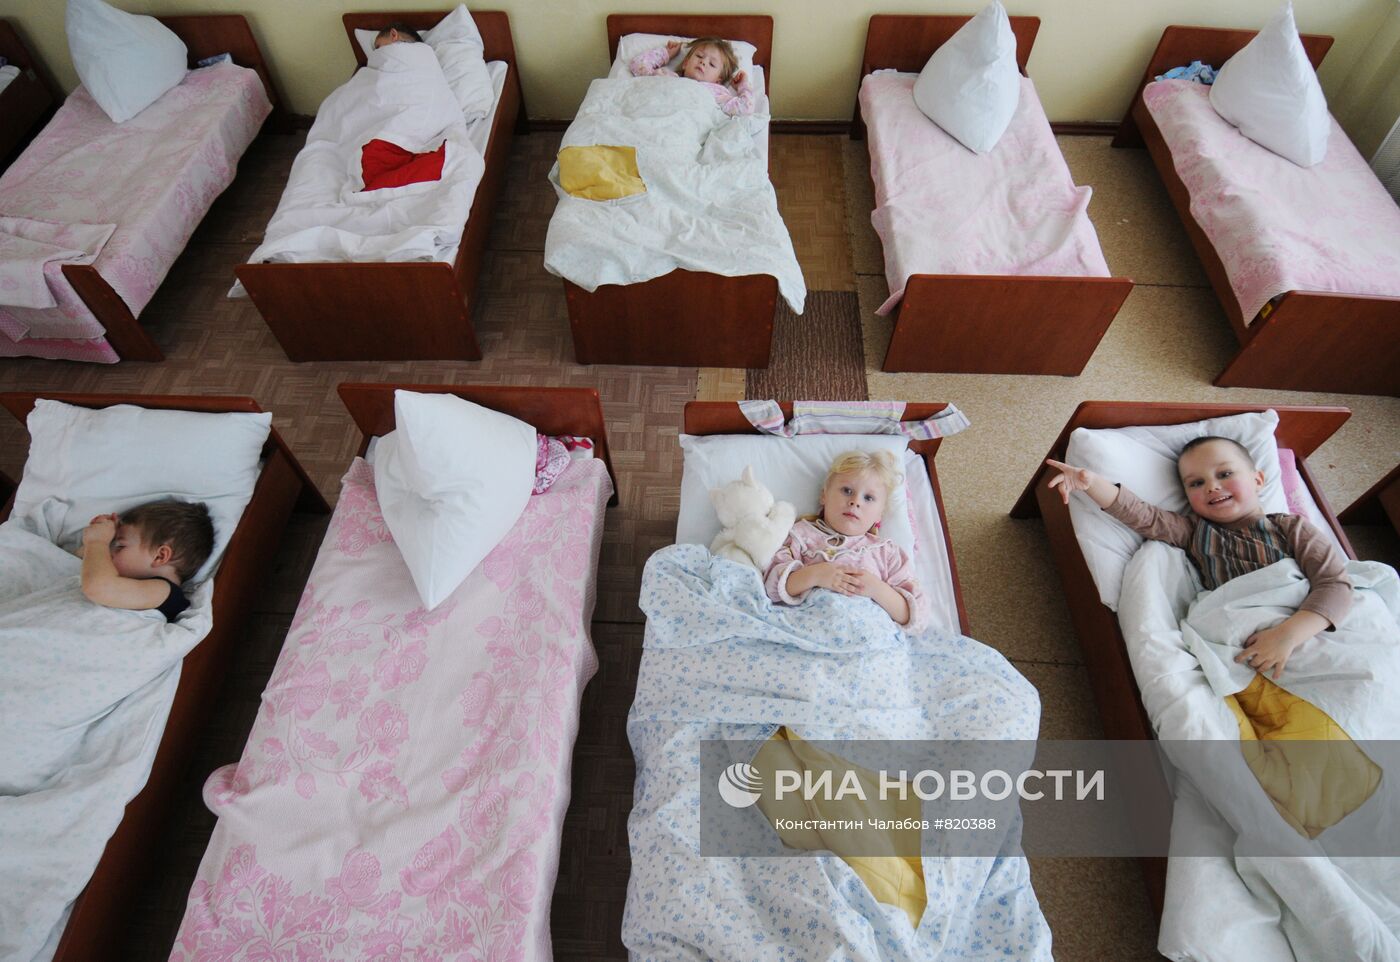 Детский сад "Чебурашка" в Великом Новгороде